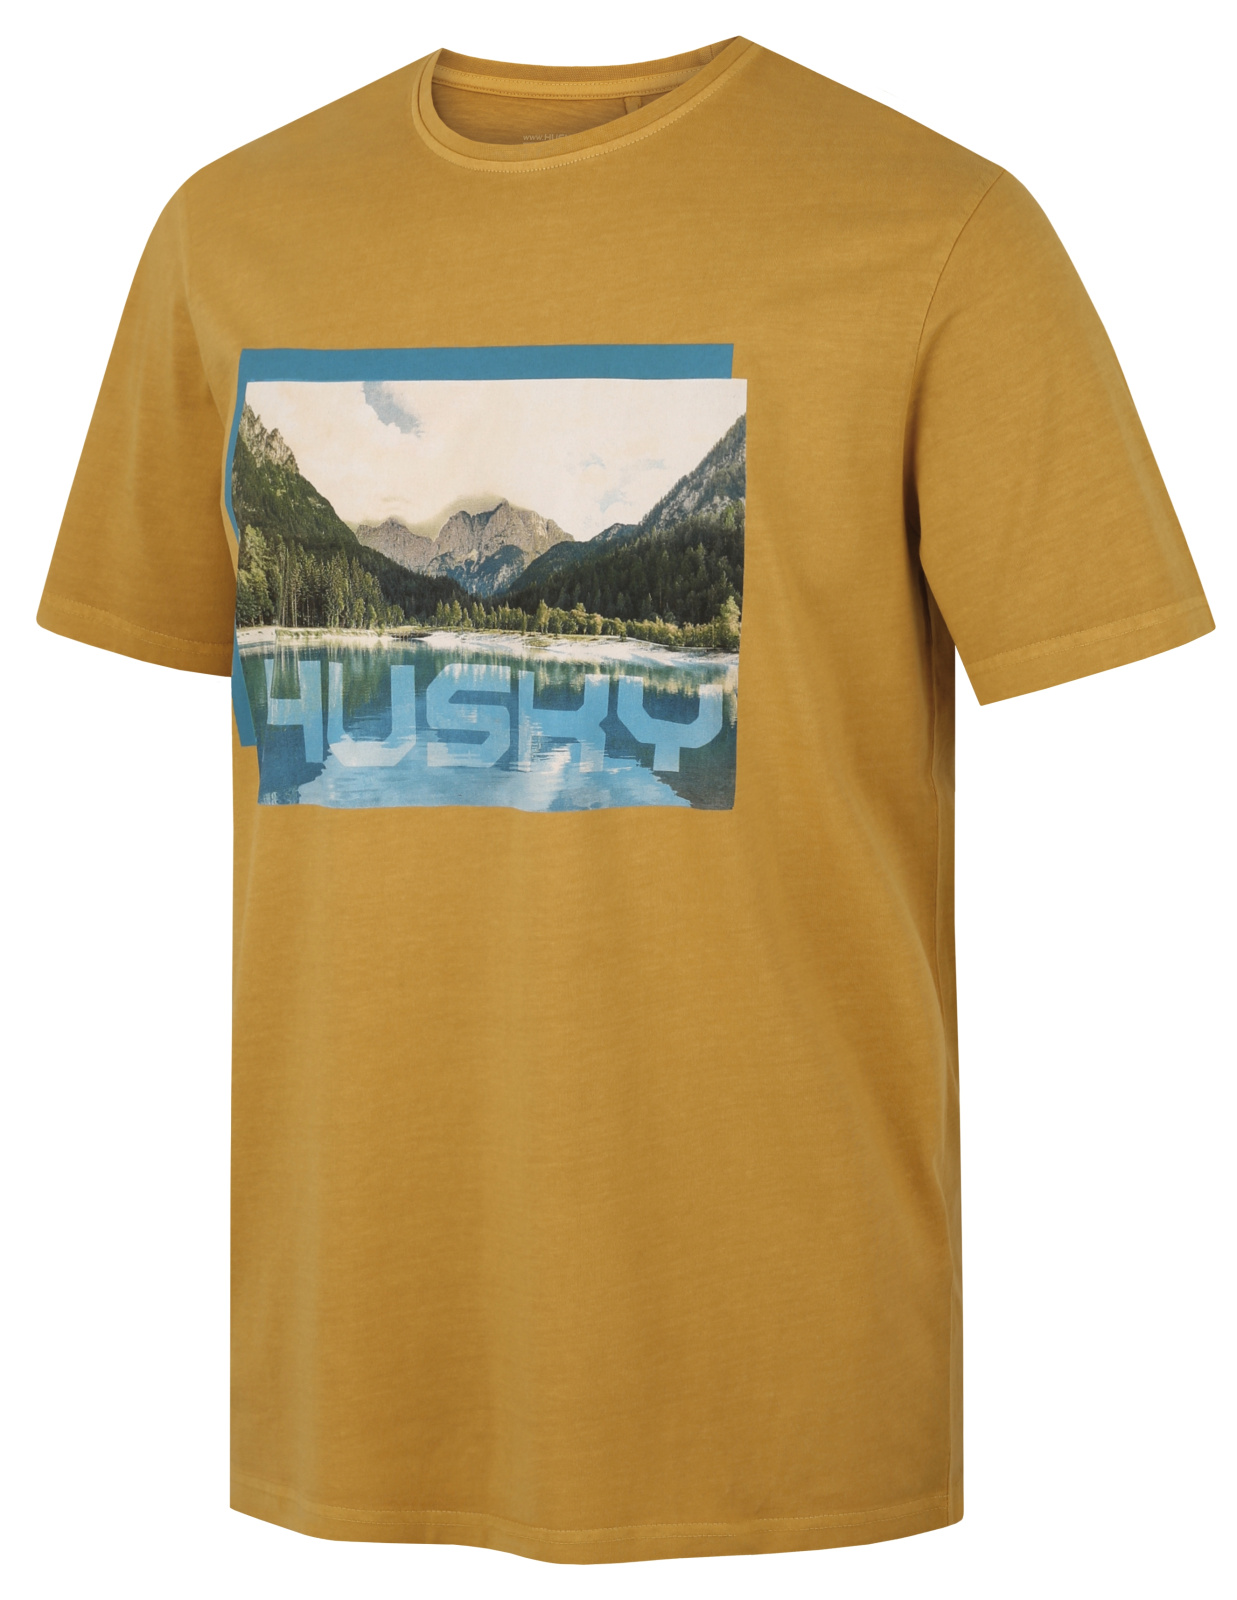 Husky Pánské bavlněné triko Tee Lake M mustard Velikost: M pánské tričko s krátkým rukávem